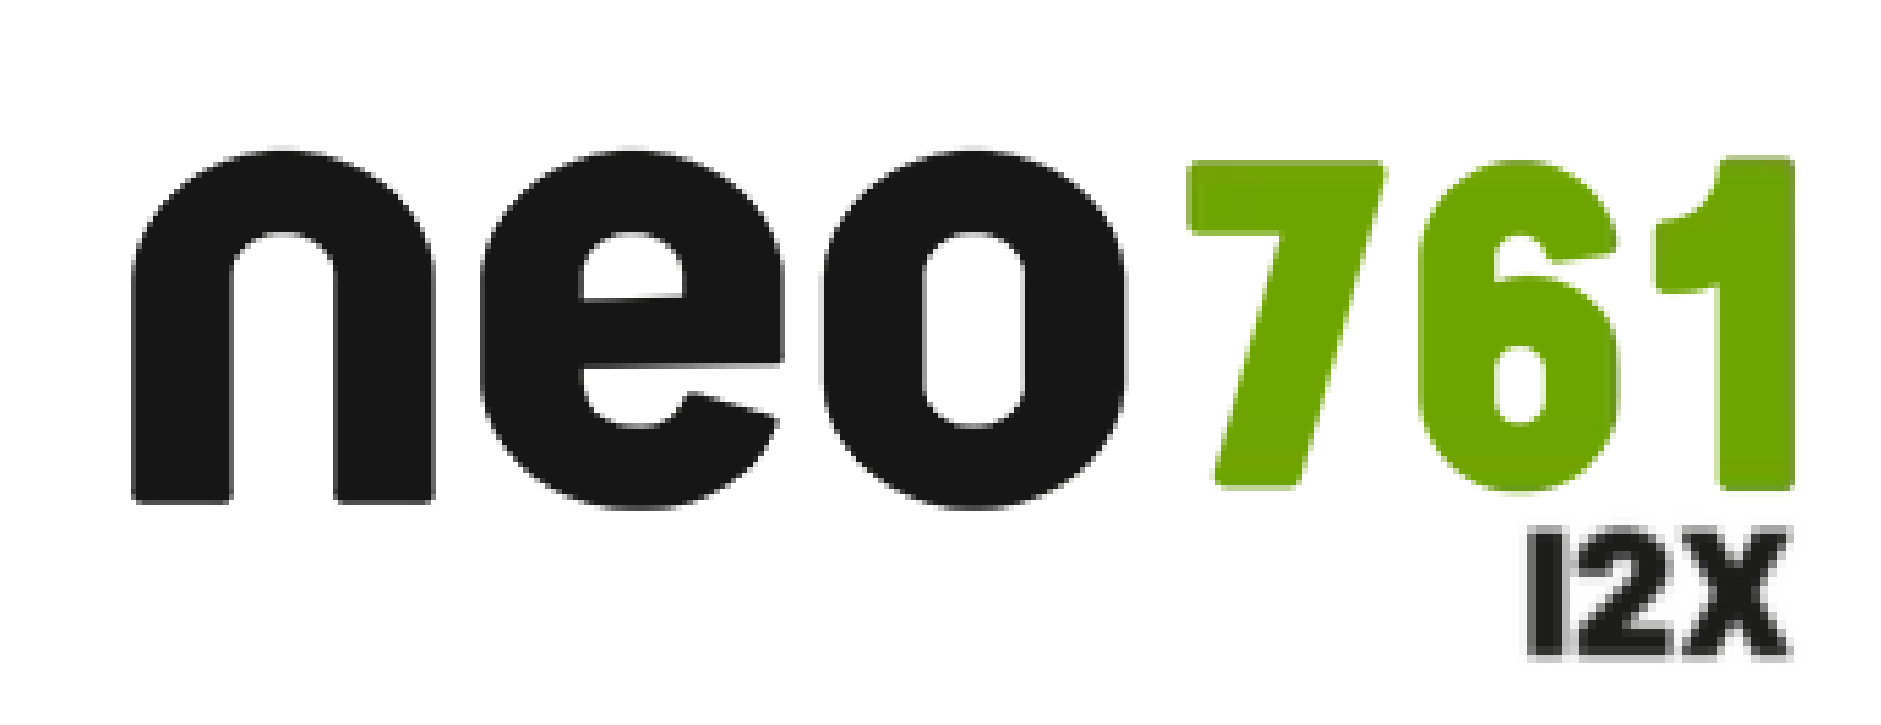 Logo do cultivar NEO 761 I2X